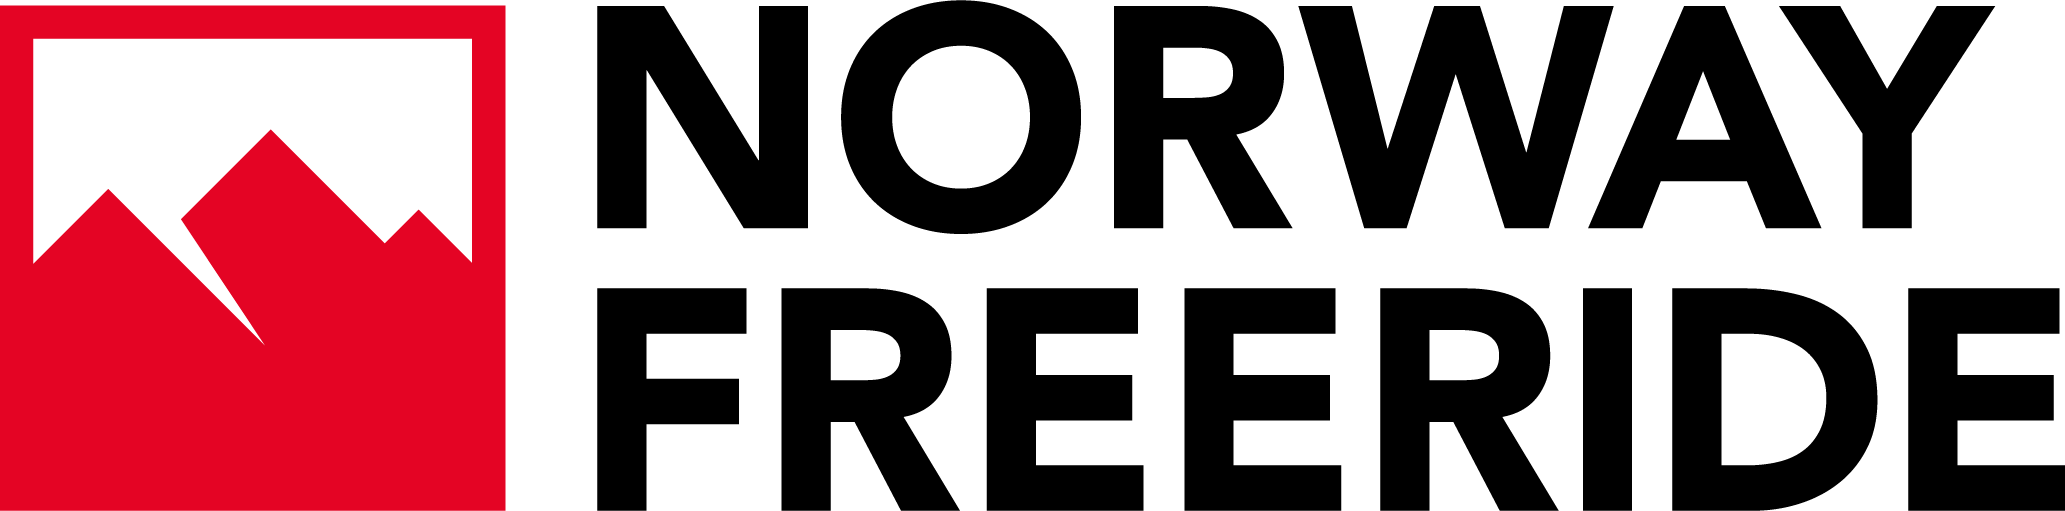 Norway Freeride